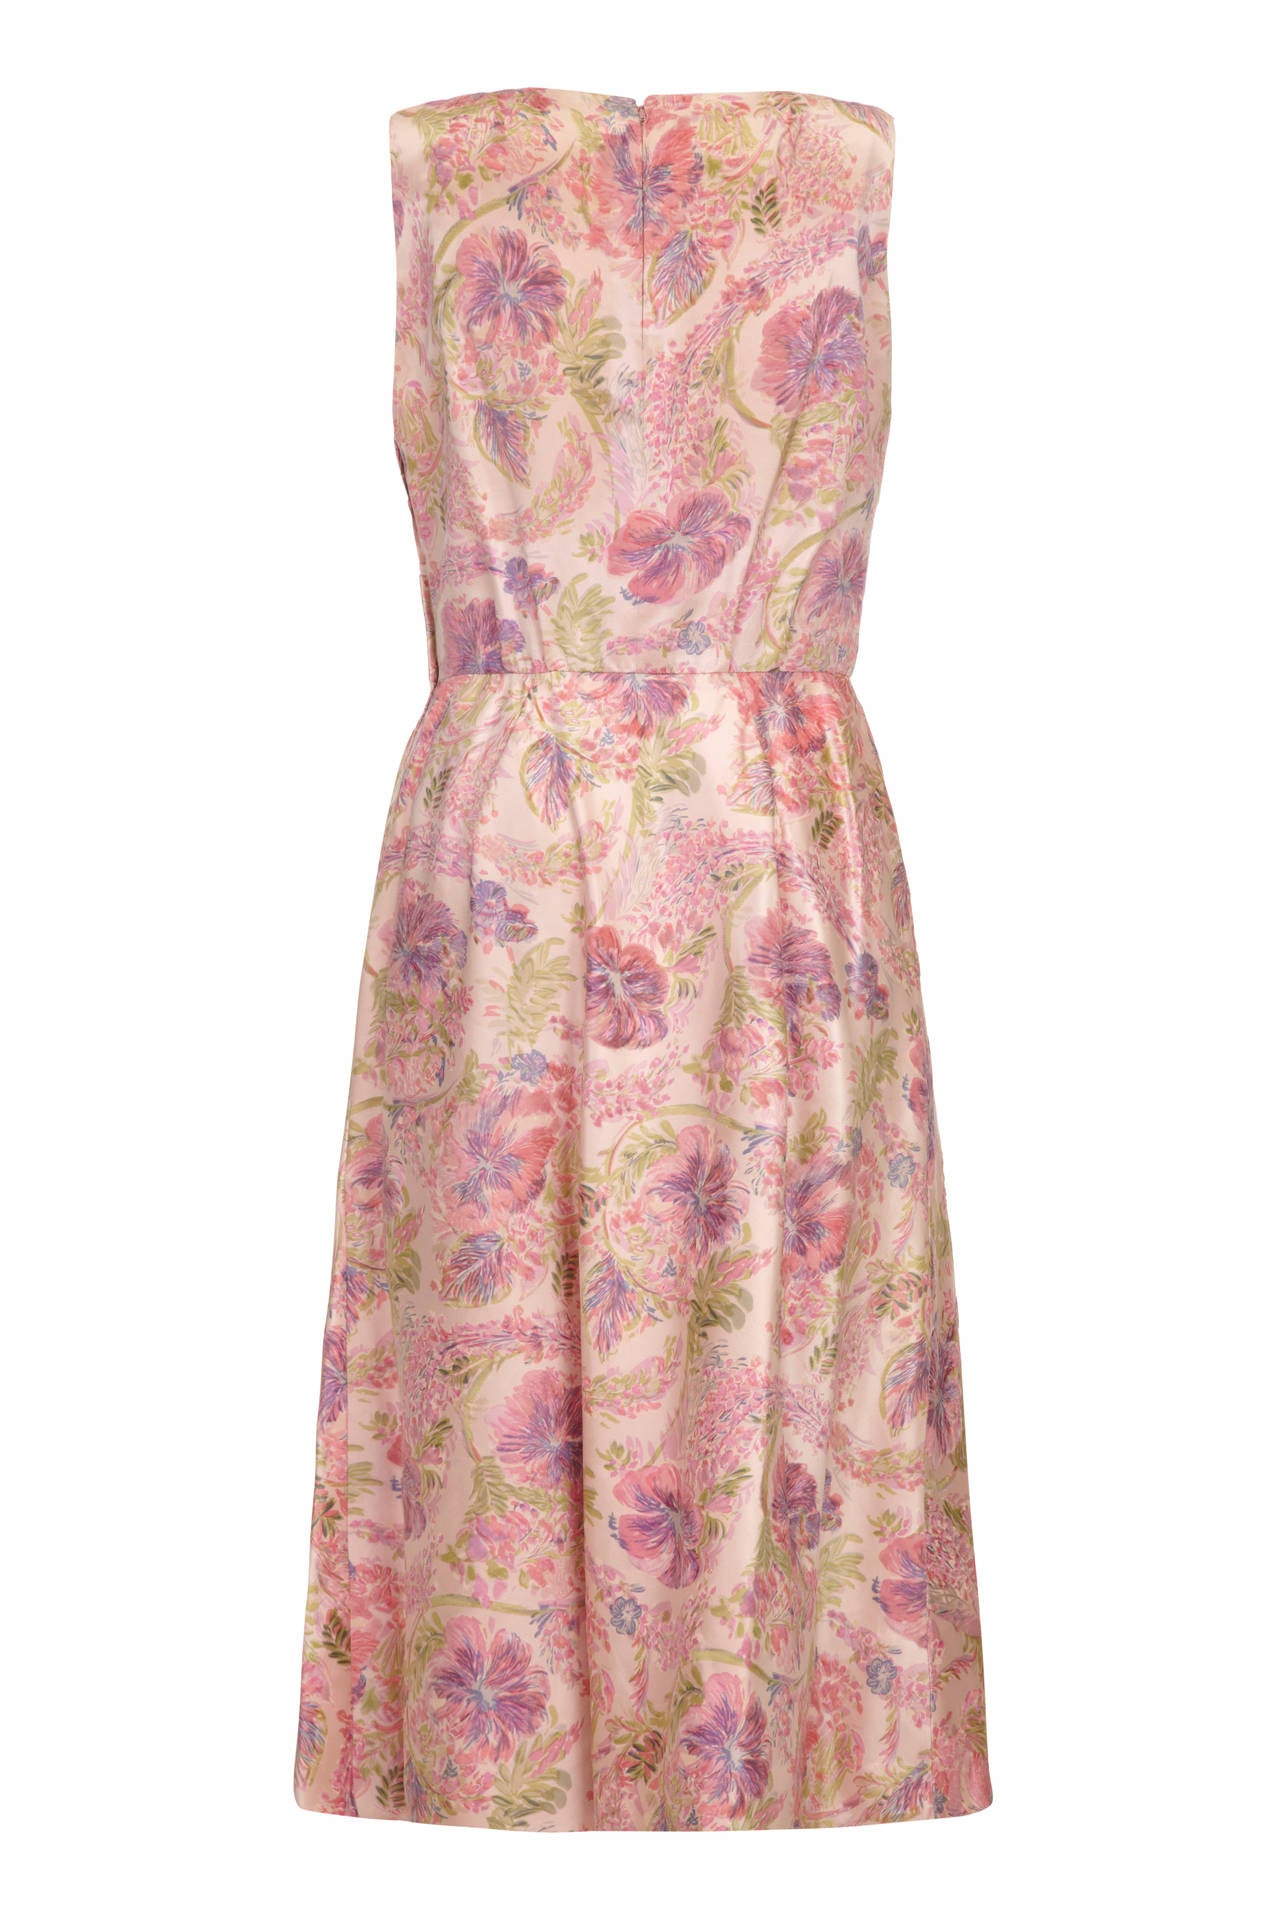 Cette magnifique robe longueur mollet des années 1950 est l'œuvre du célèbre couturier américain Mainbocher, qui a conçu la robe de mariée et le trousseau de Wallis Simpson pour son mariage avec le duc de Windsor en 1937, et dont les créations sont